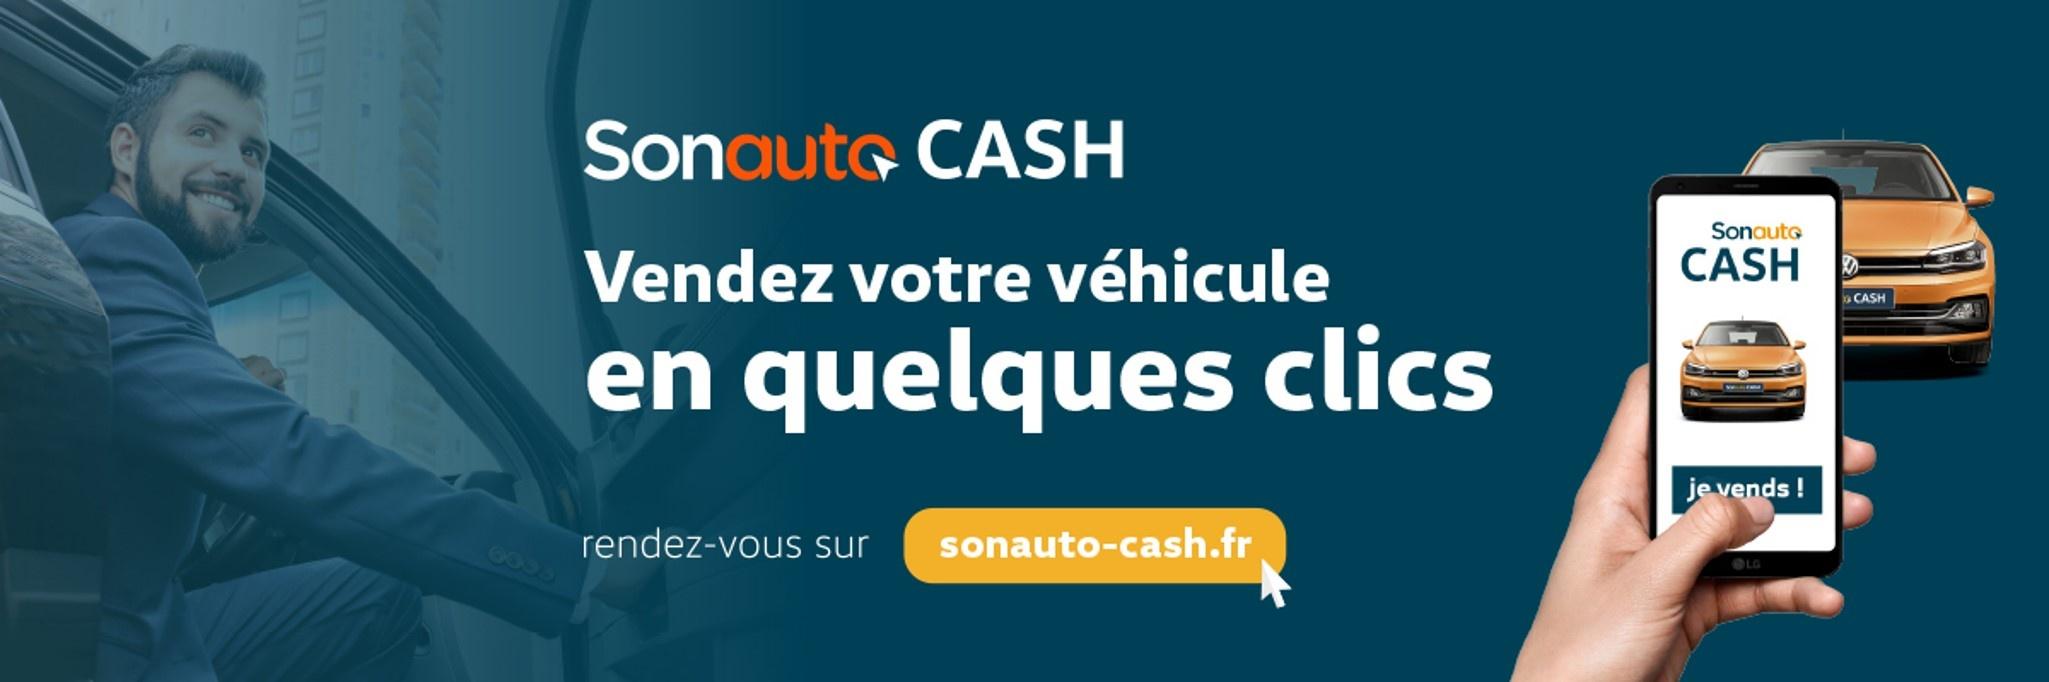 RIVIERA TECHNIC - SKODA Mougins - Vendez votre véhicule en quelques clics avec Sonauto Cash